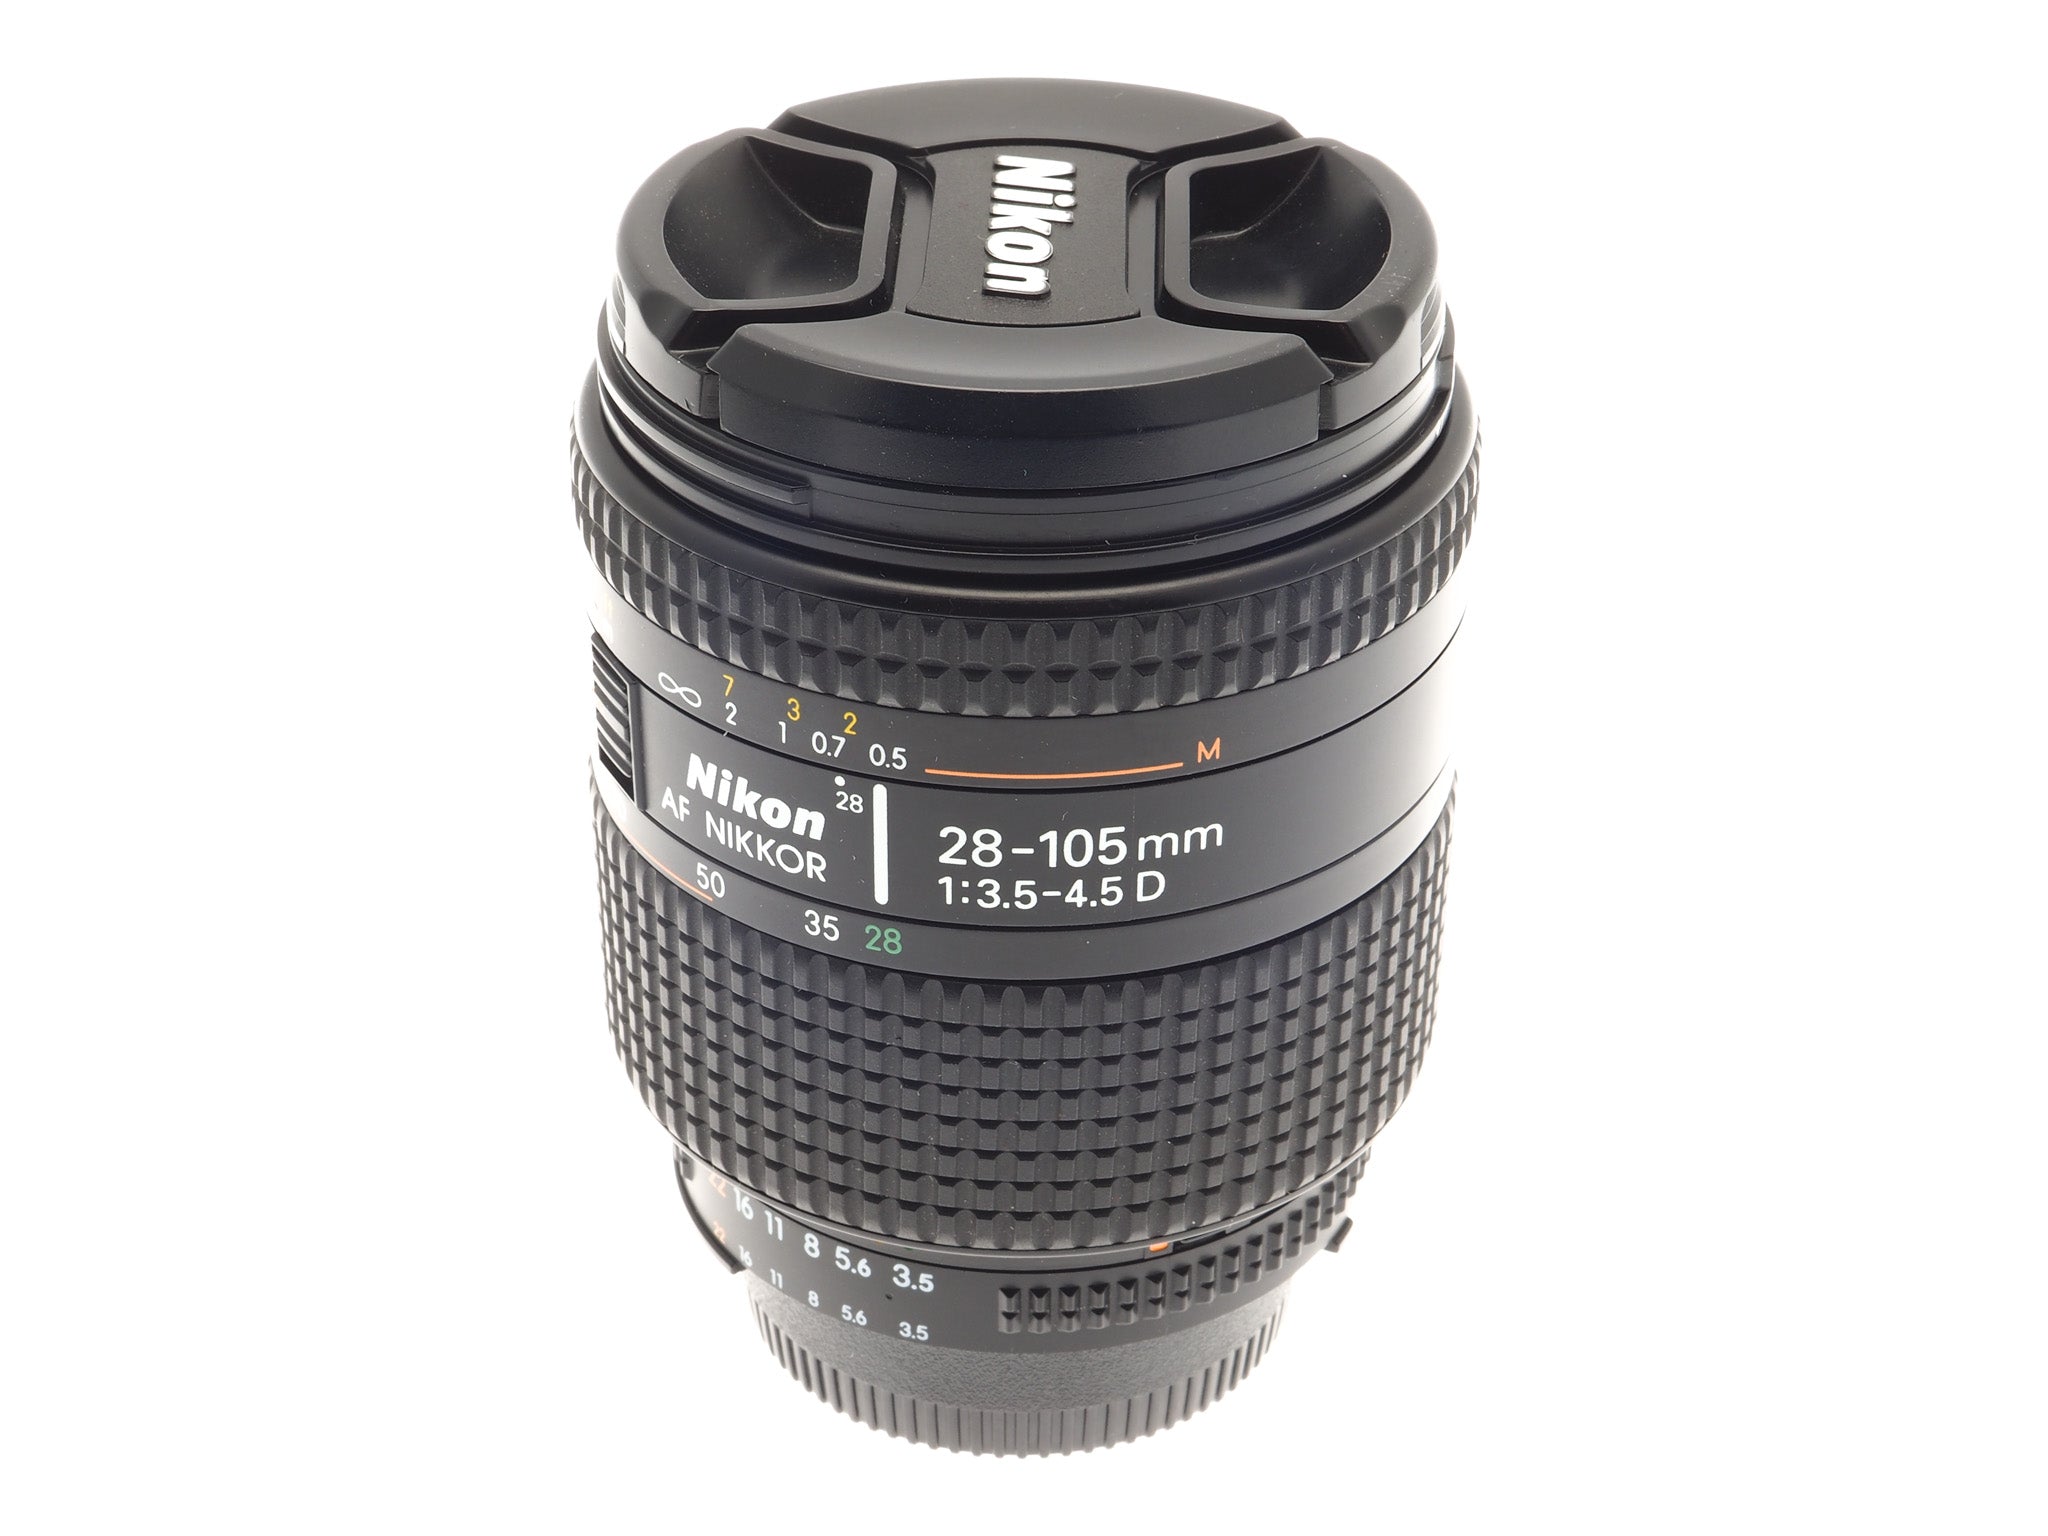 Nikon F80 AF Nikkor 28-105mm F3.5-4.5D - フィルムカメラ